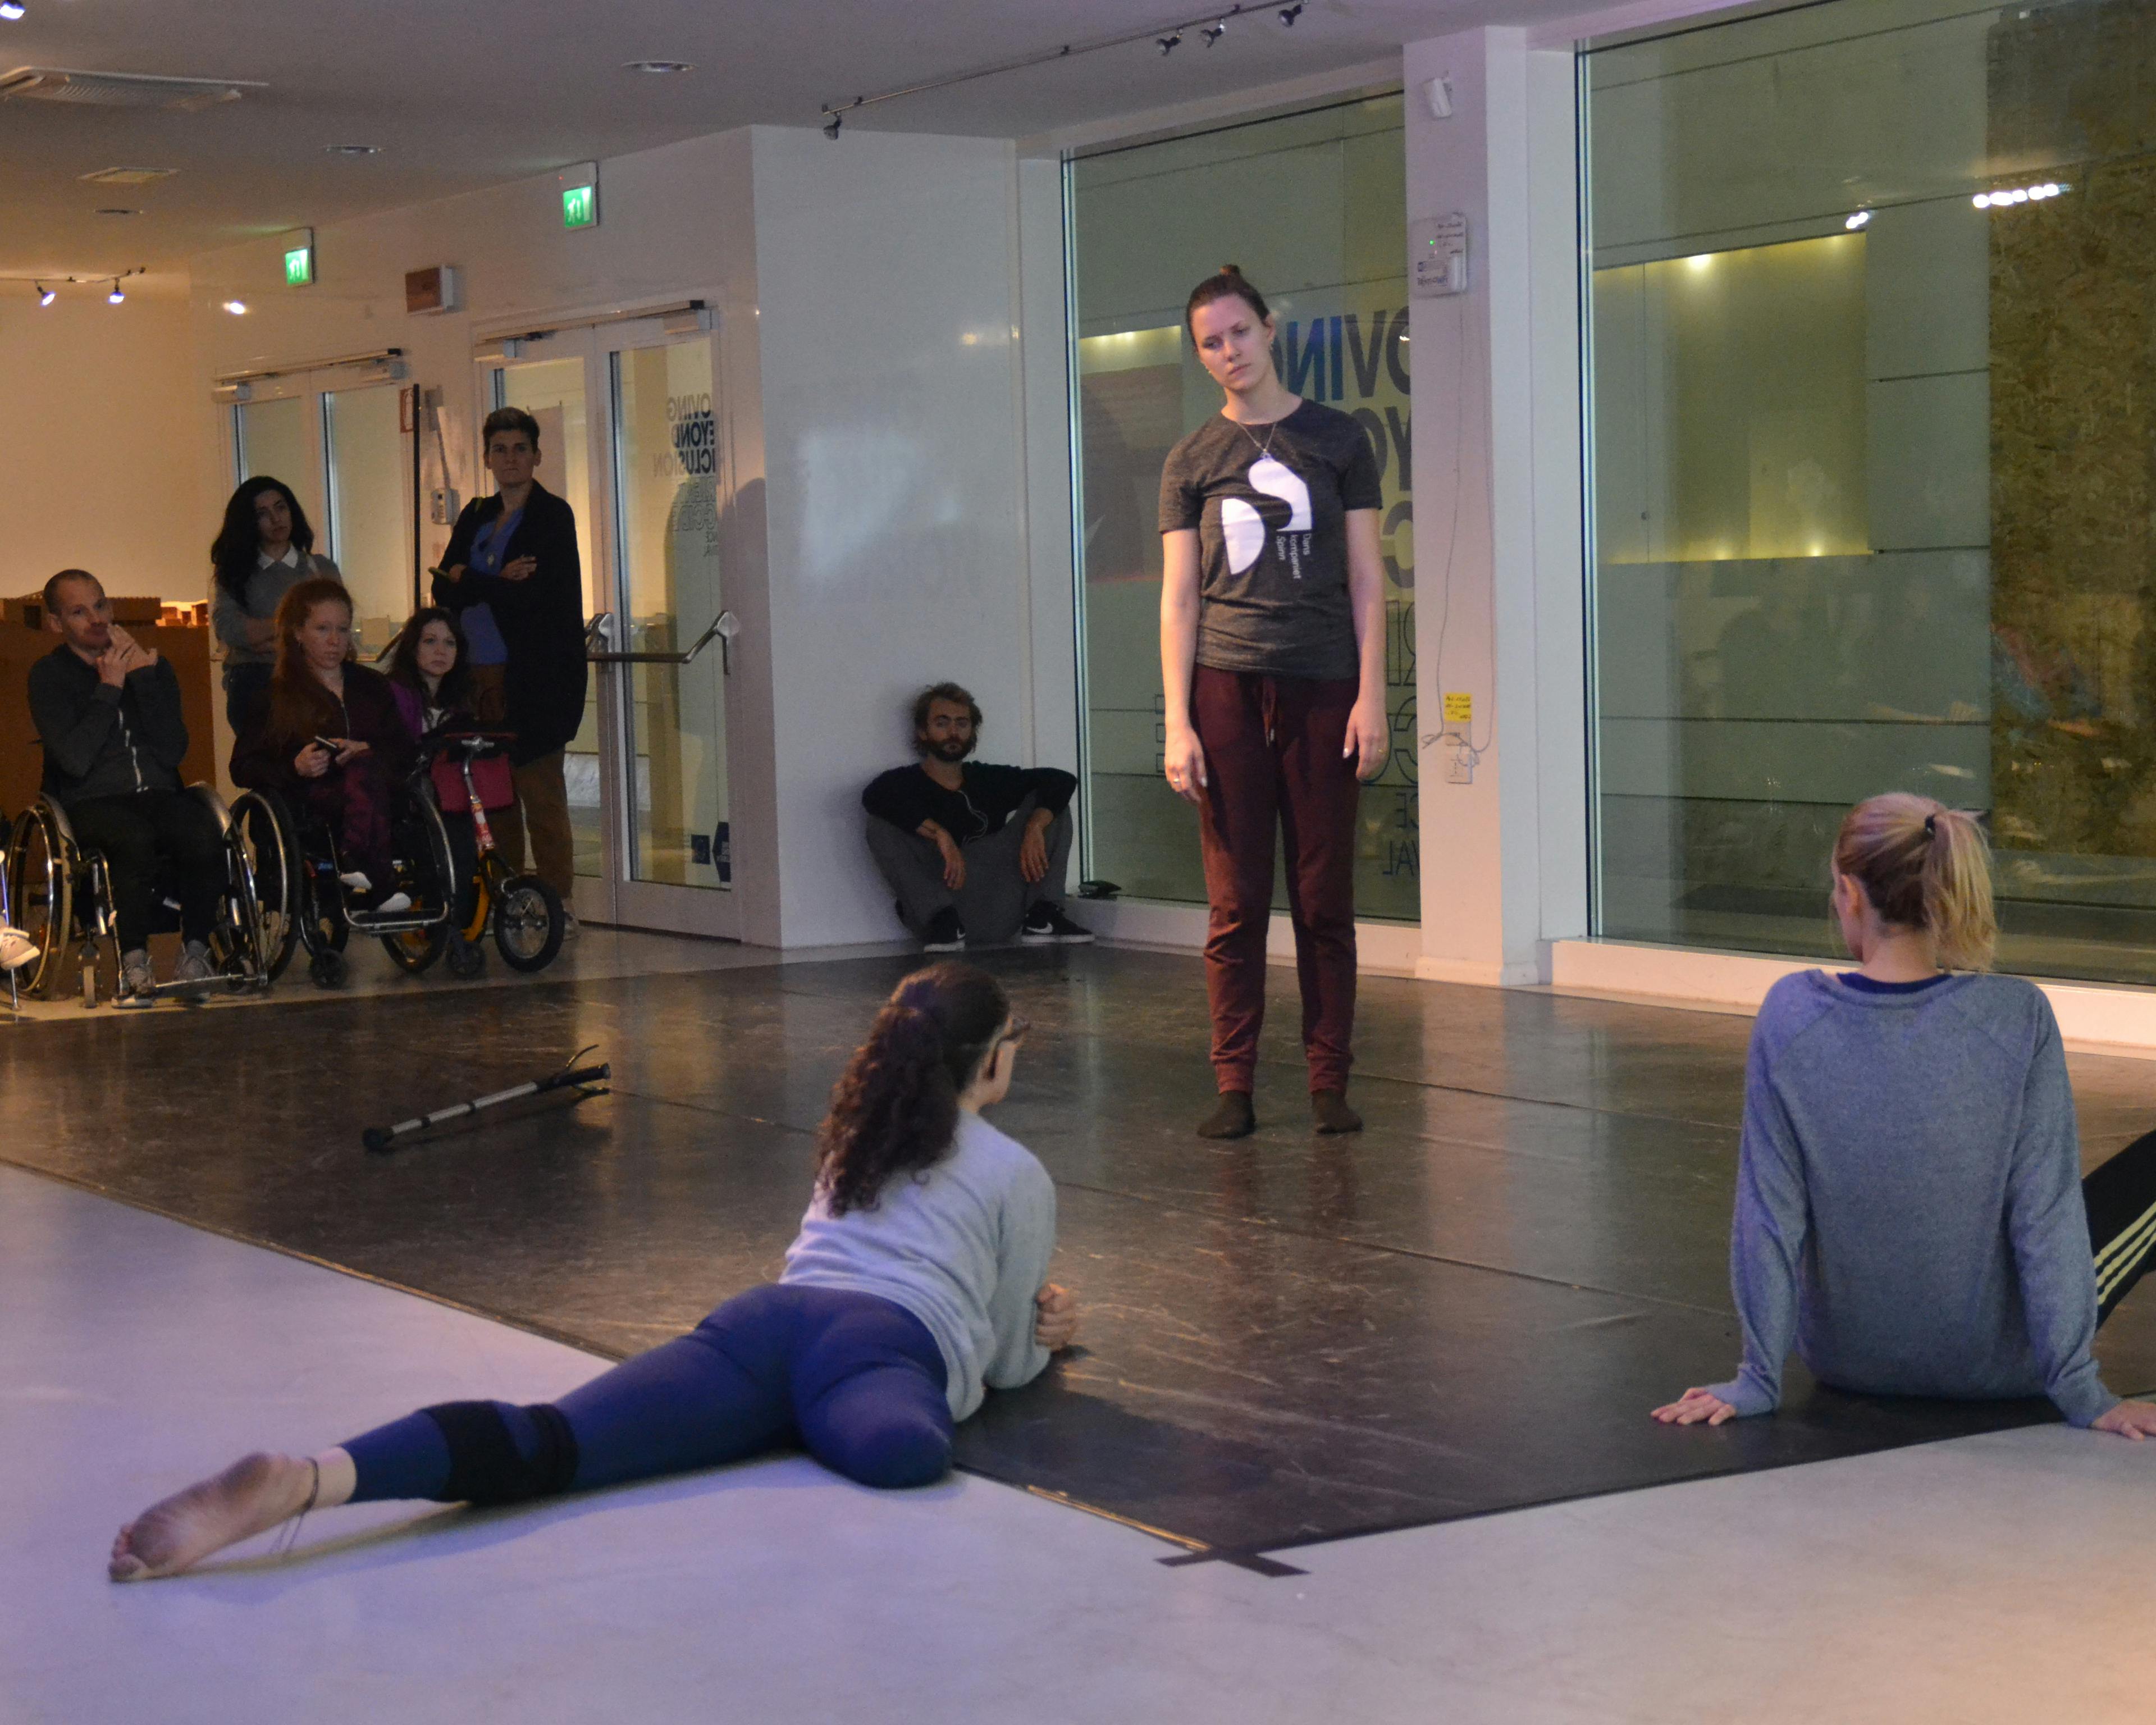 Tre danzatrici, una delle quali senza una gamba, durante un laboratorio. Altre ed altri partecipanti con e senza disabilità osservano da fondo sala.